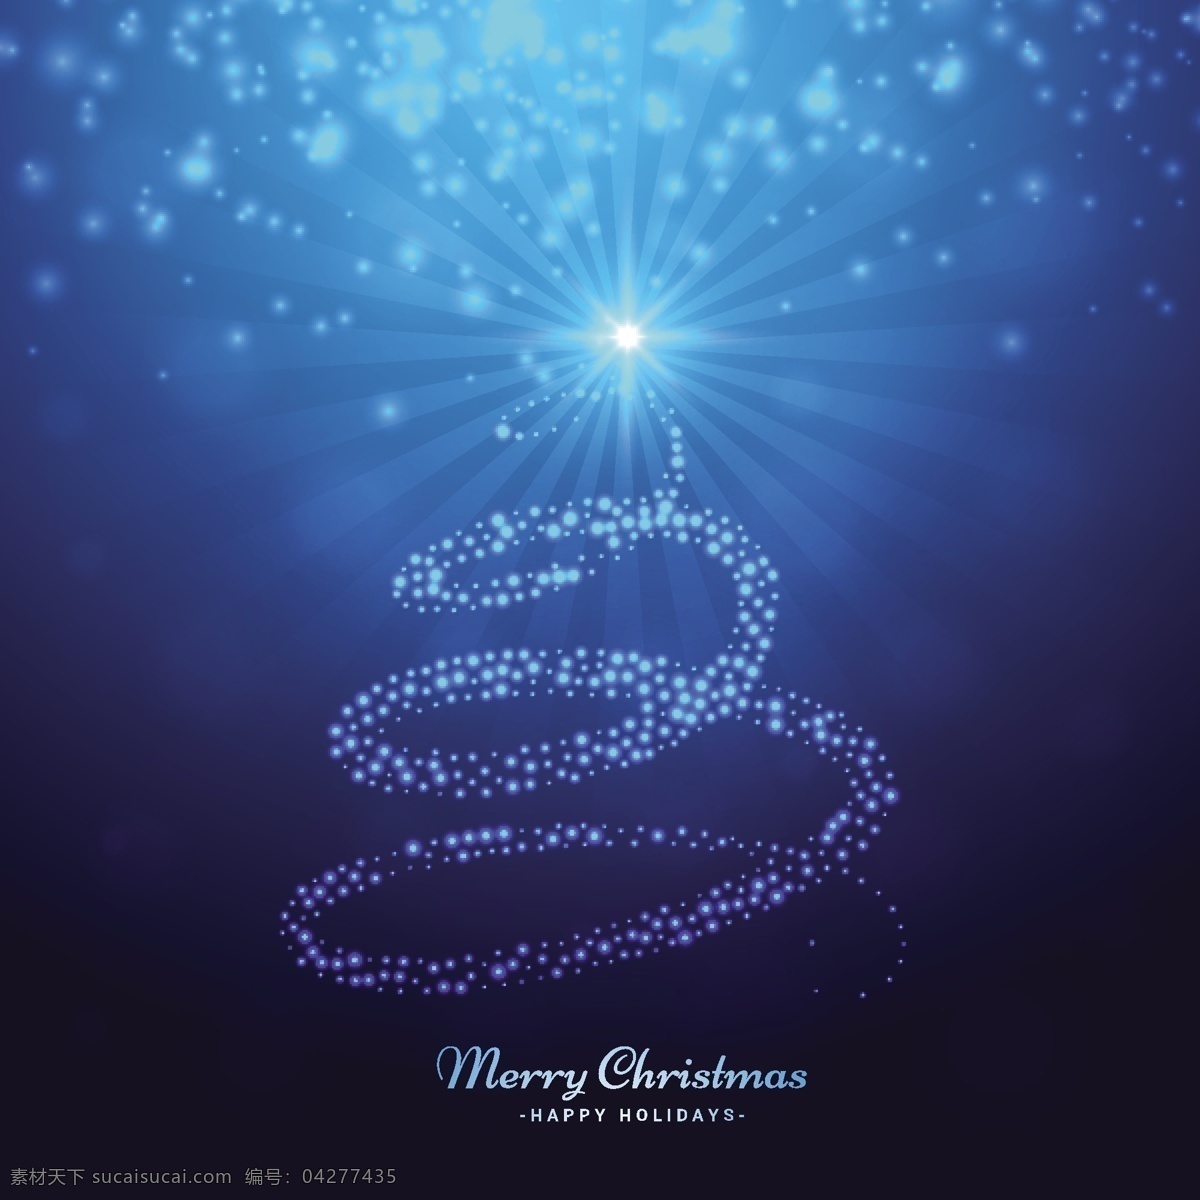 时髦的圣诞树 背景 圣诞树 明星卡 几何 新的一年里 雪 蓝色的背景 冬天 蓝色 快乐 圣诞背景 圣诞卡 圣诞 节日 庆典 新的冰